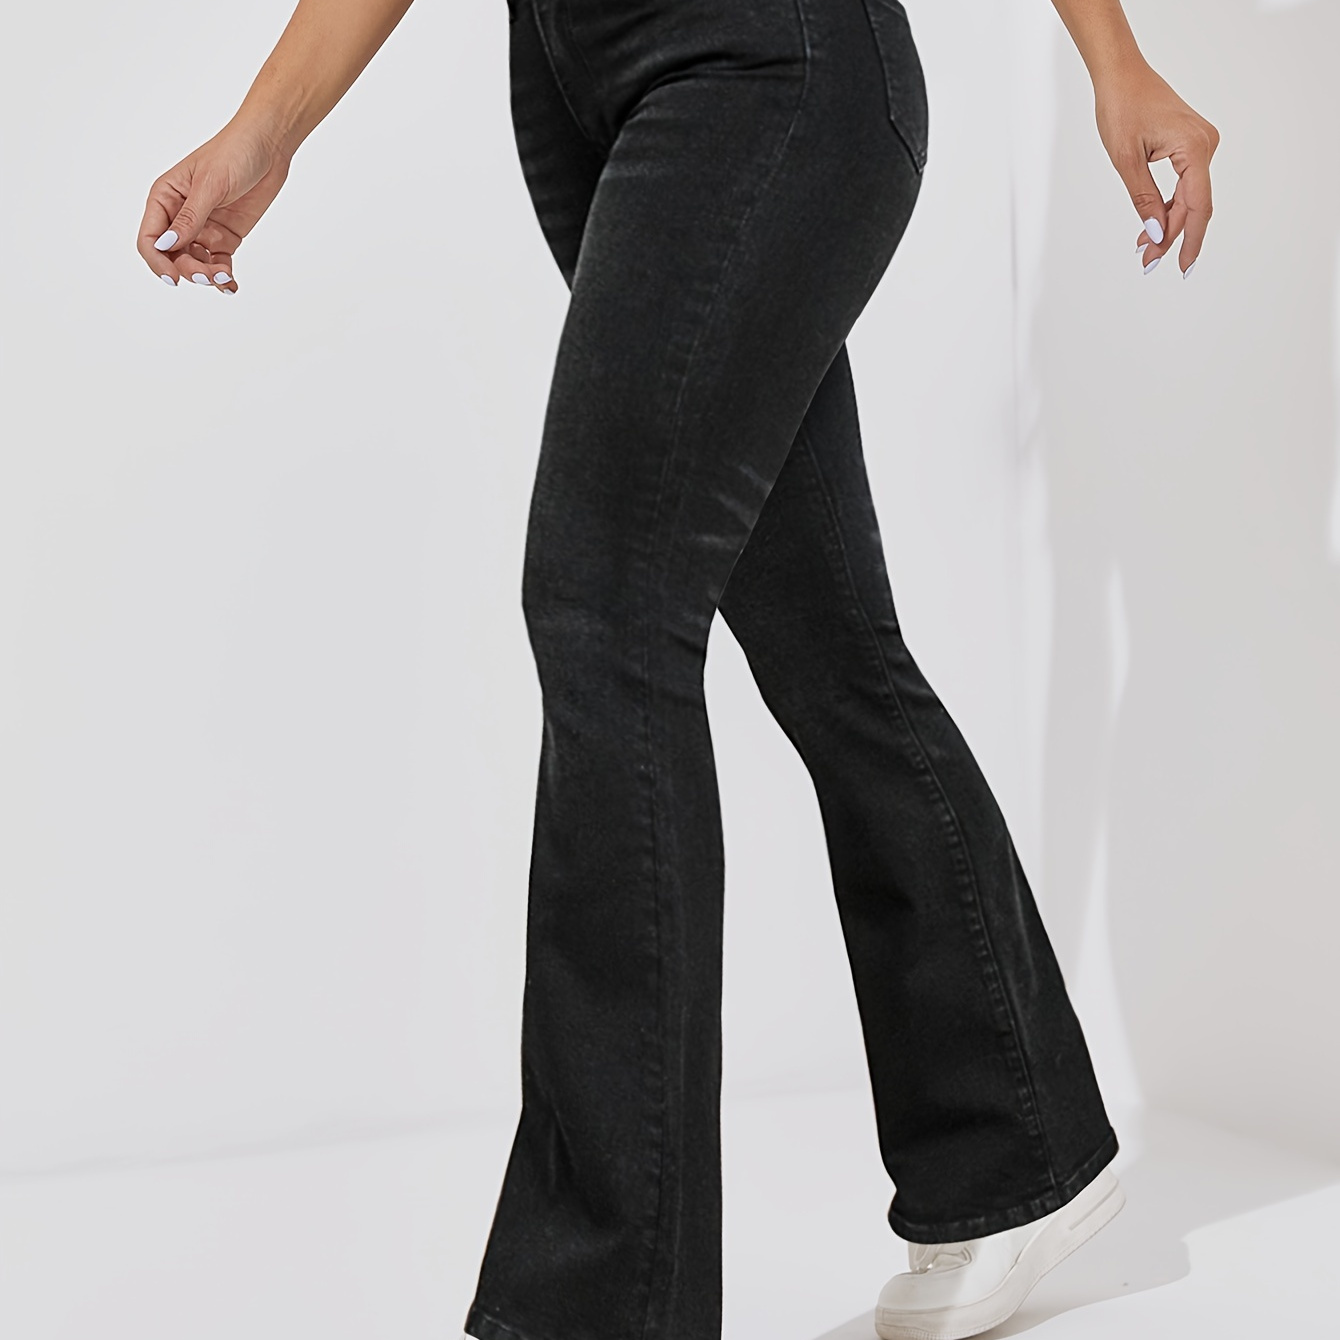 

Plain High Rise Flare Leg Jeans, Whiskering High Stretch Bell Bottom Denim Pants, Women's Denim Jeans & Clothing